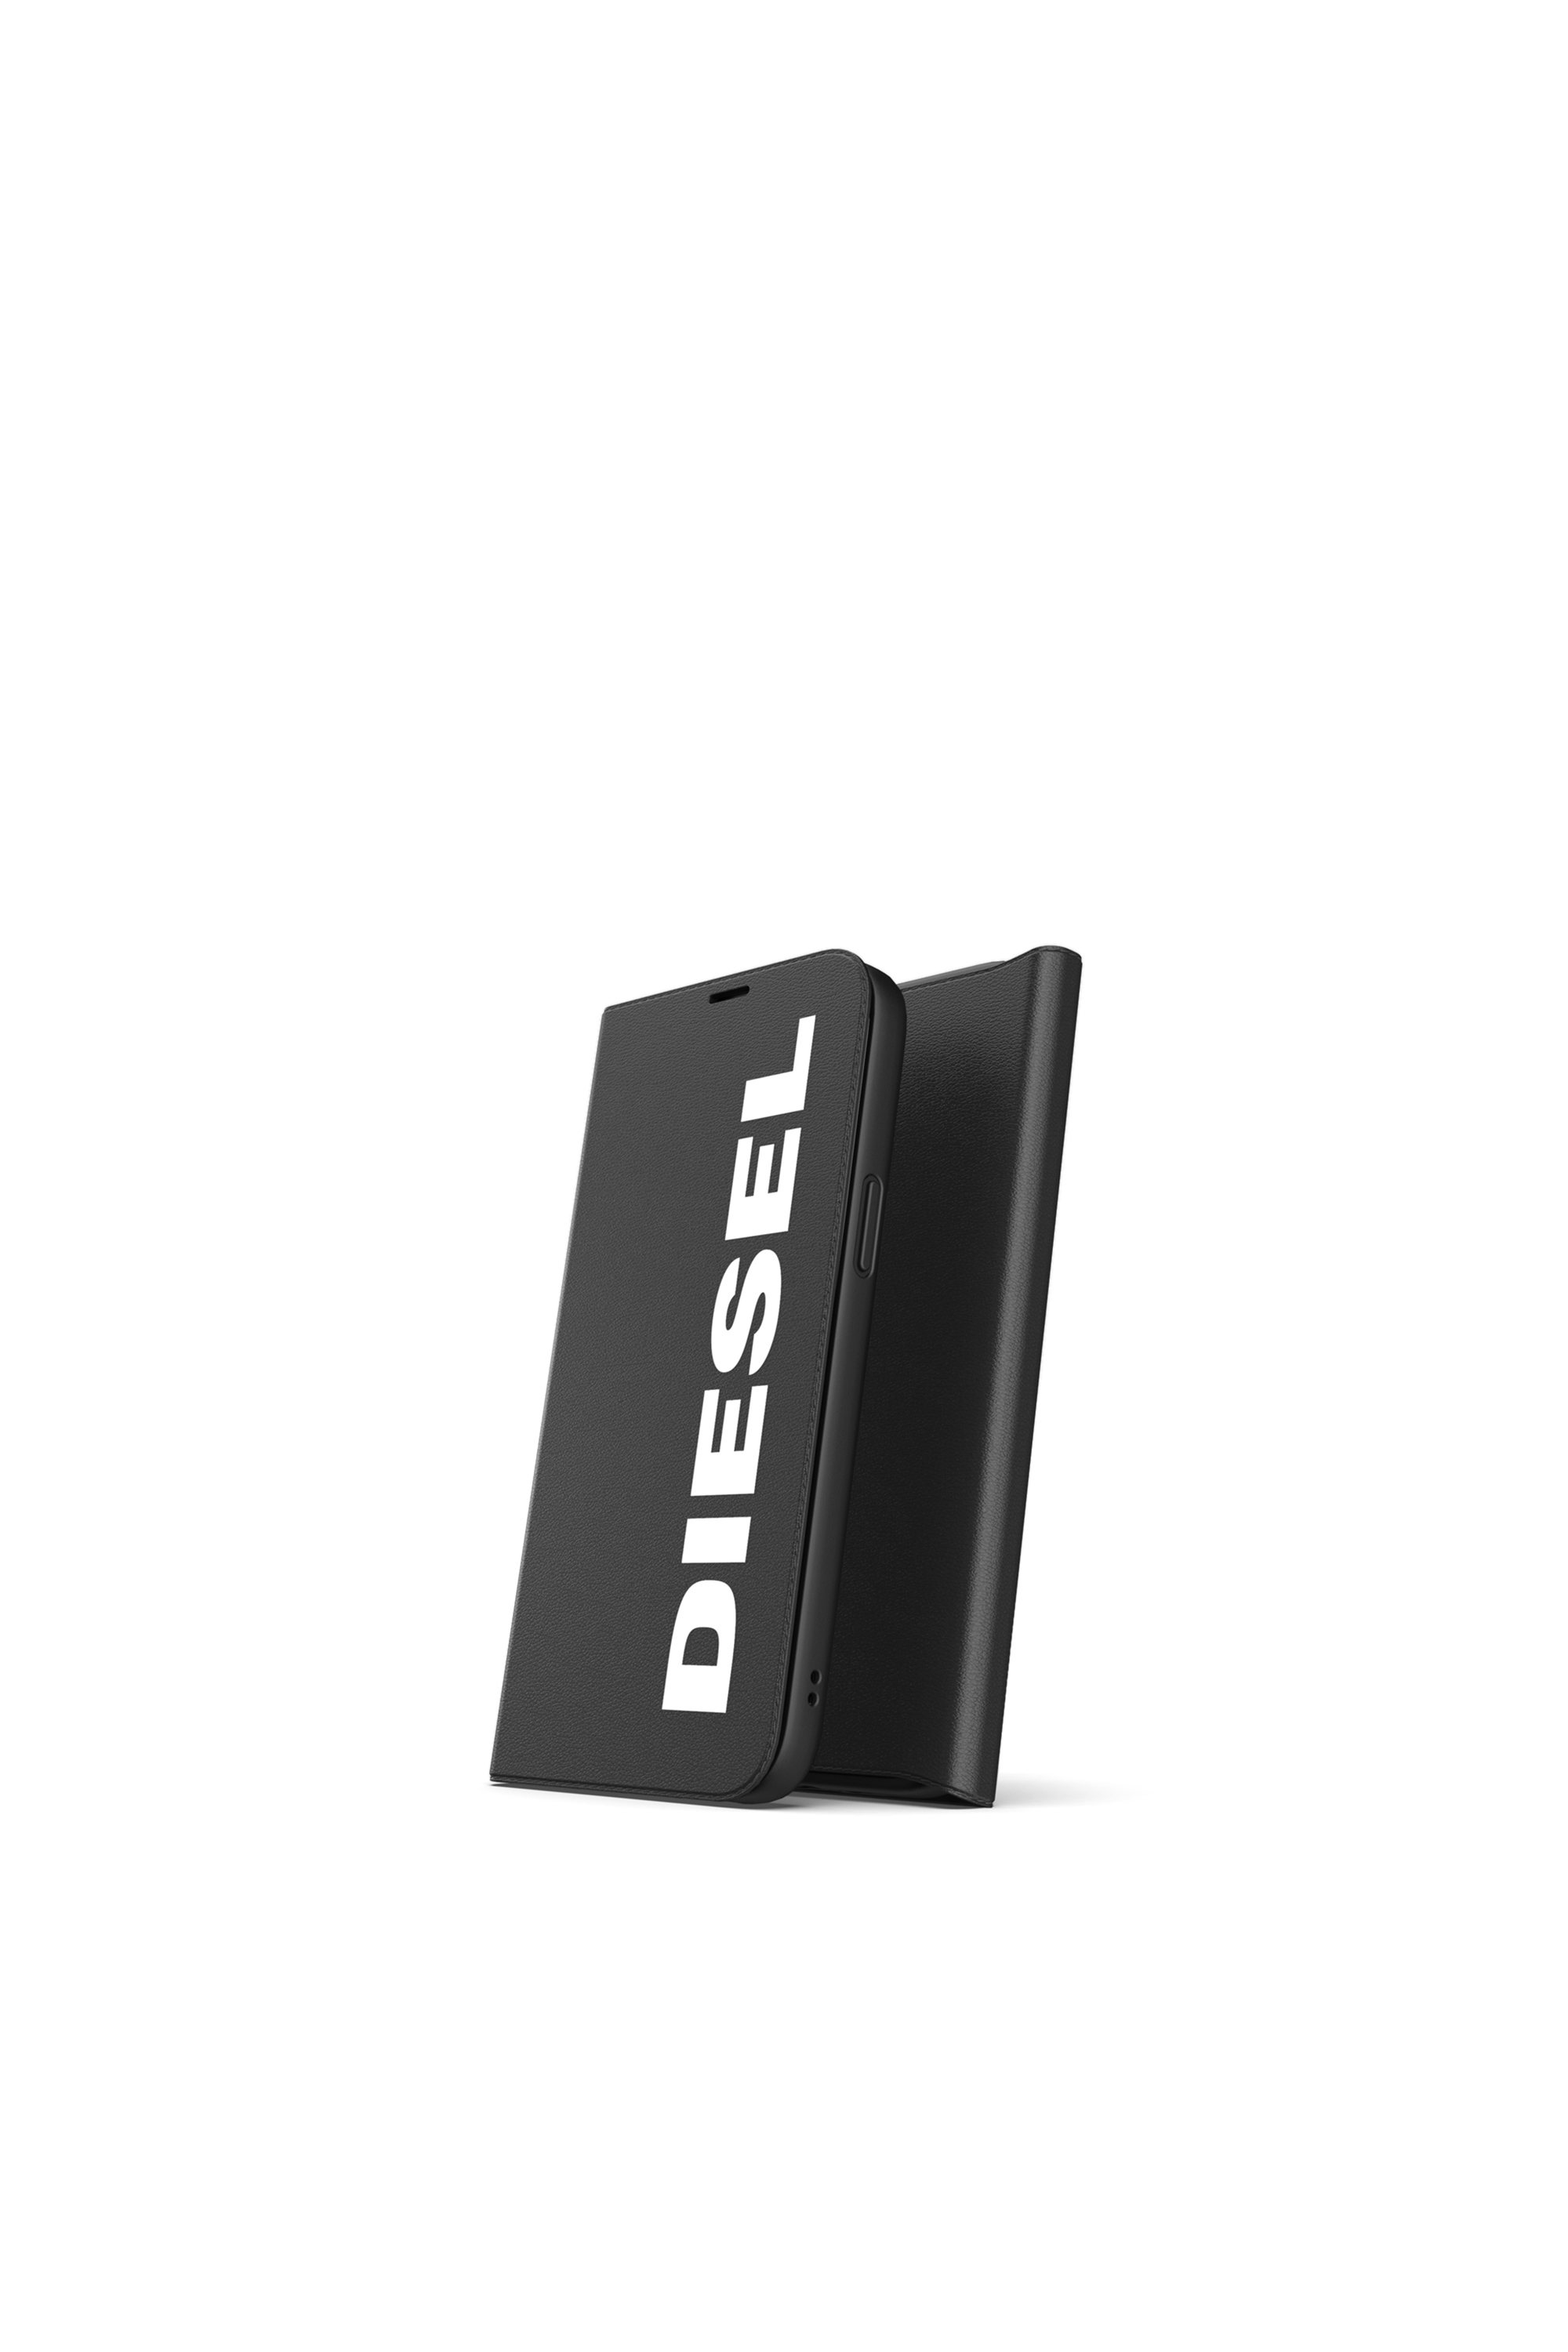 Diesel - 42487, Black - Image 3